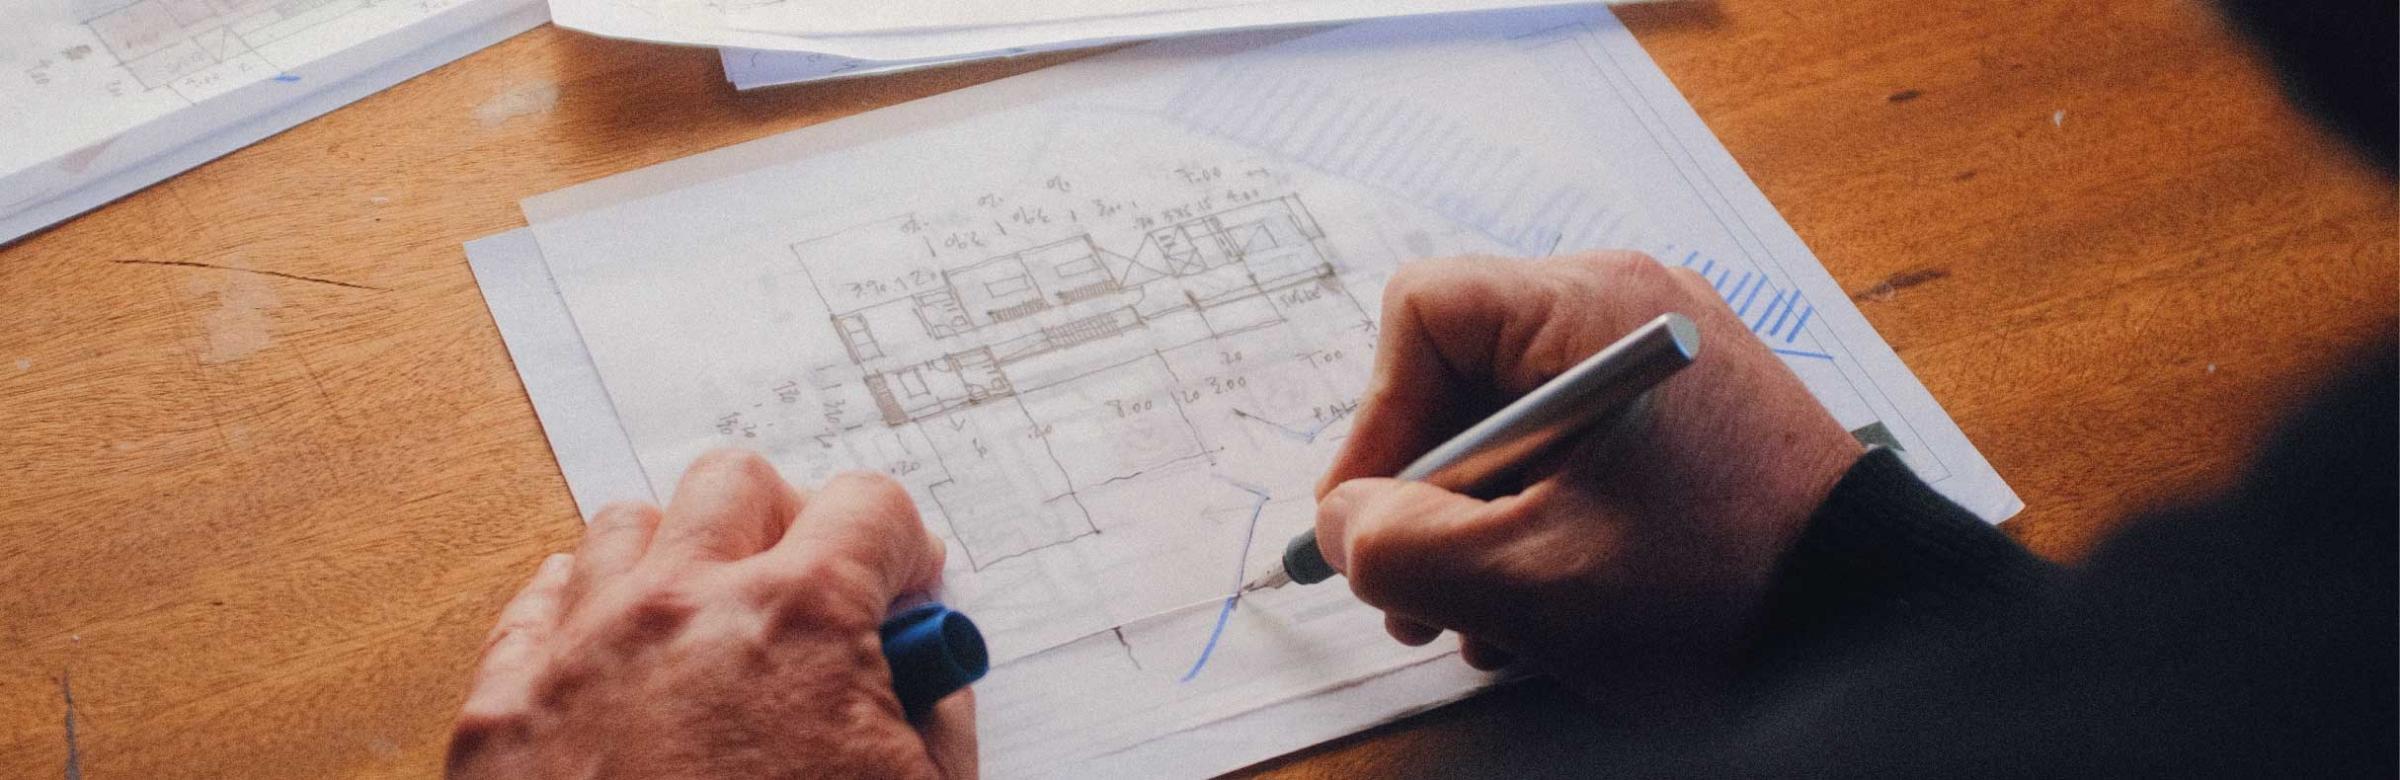 Un dessinateur bâtiment réalise un schéma